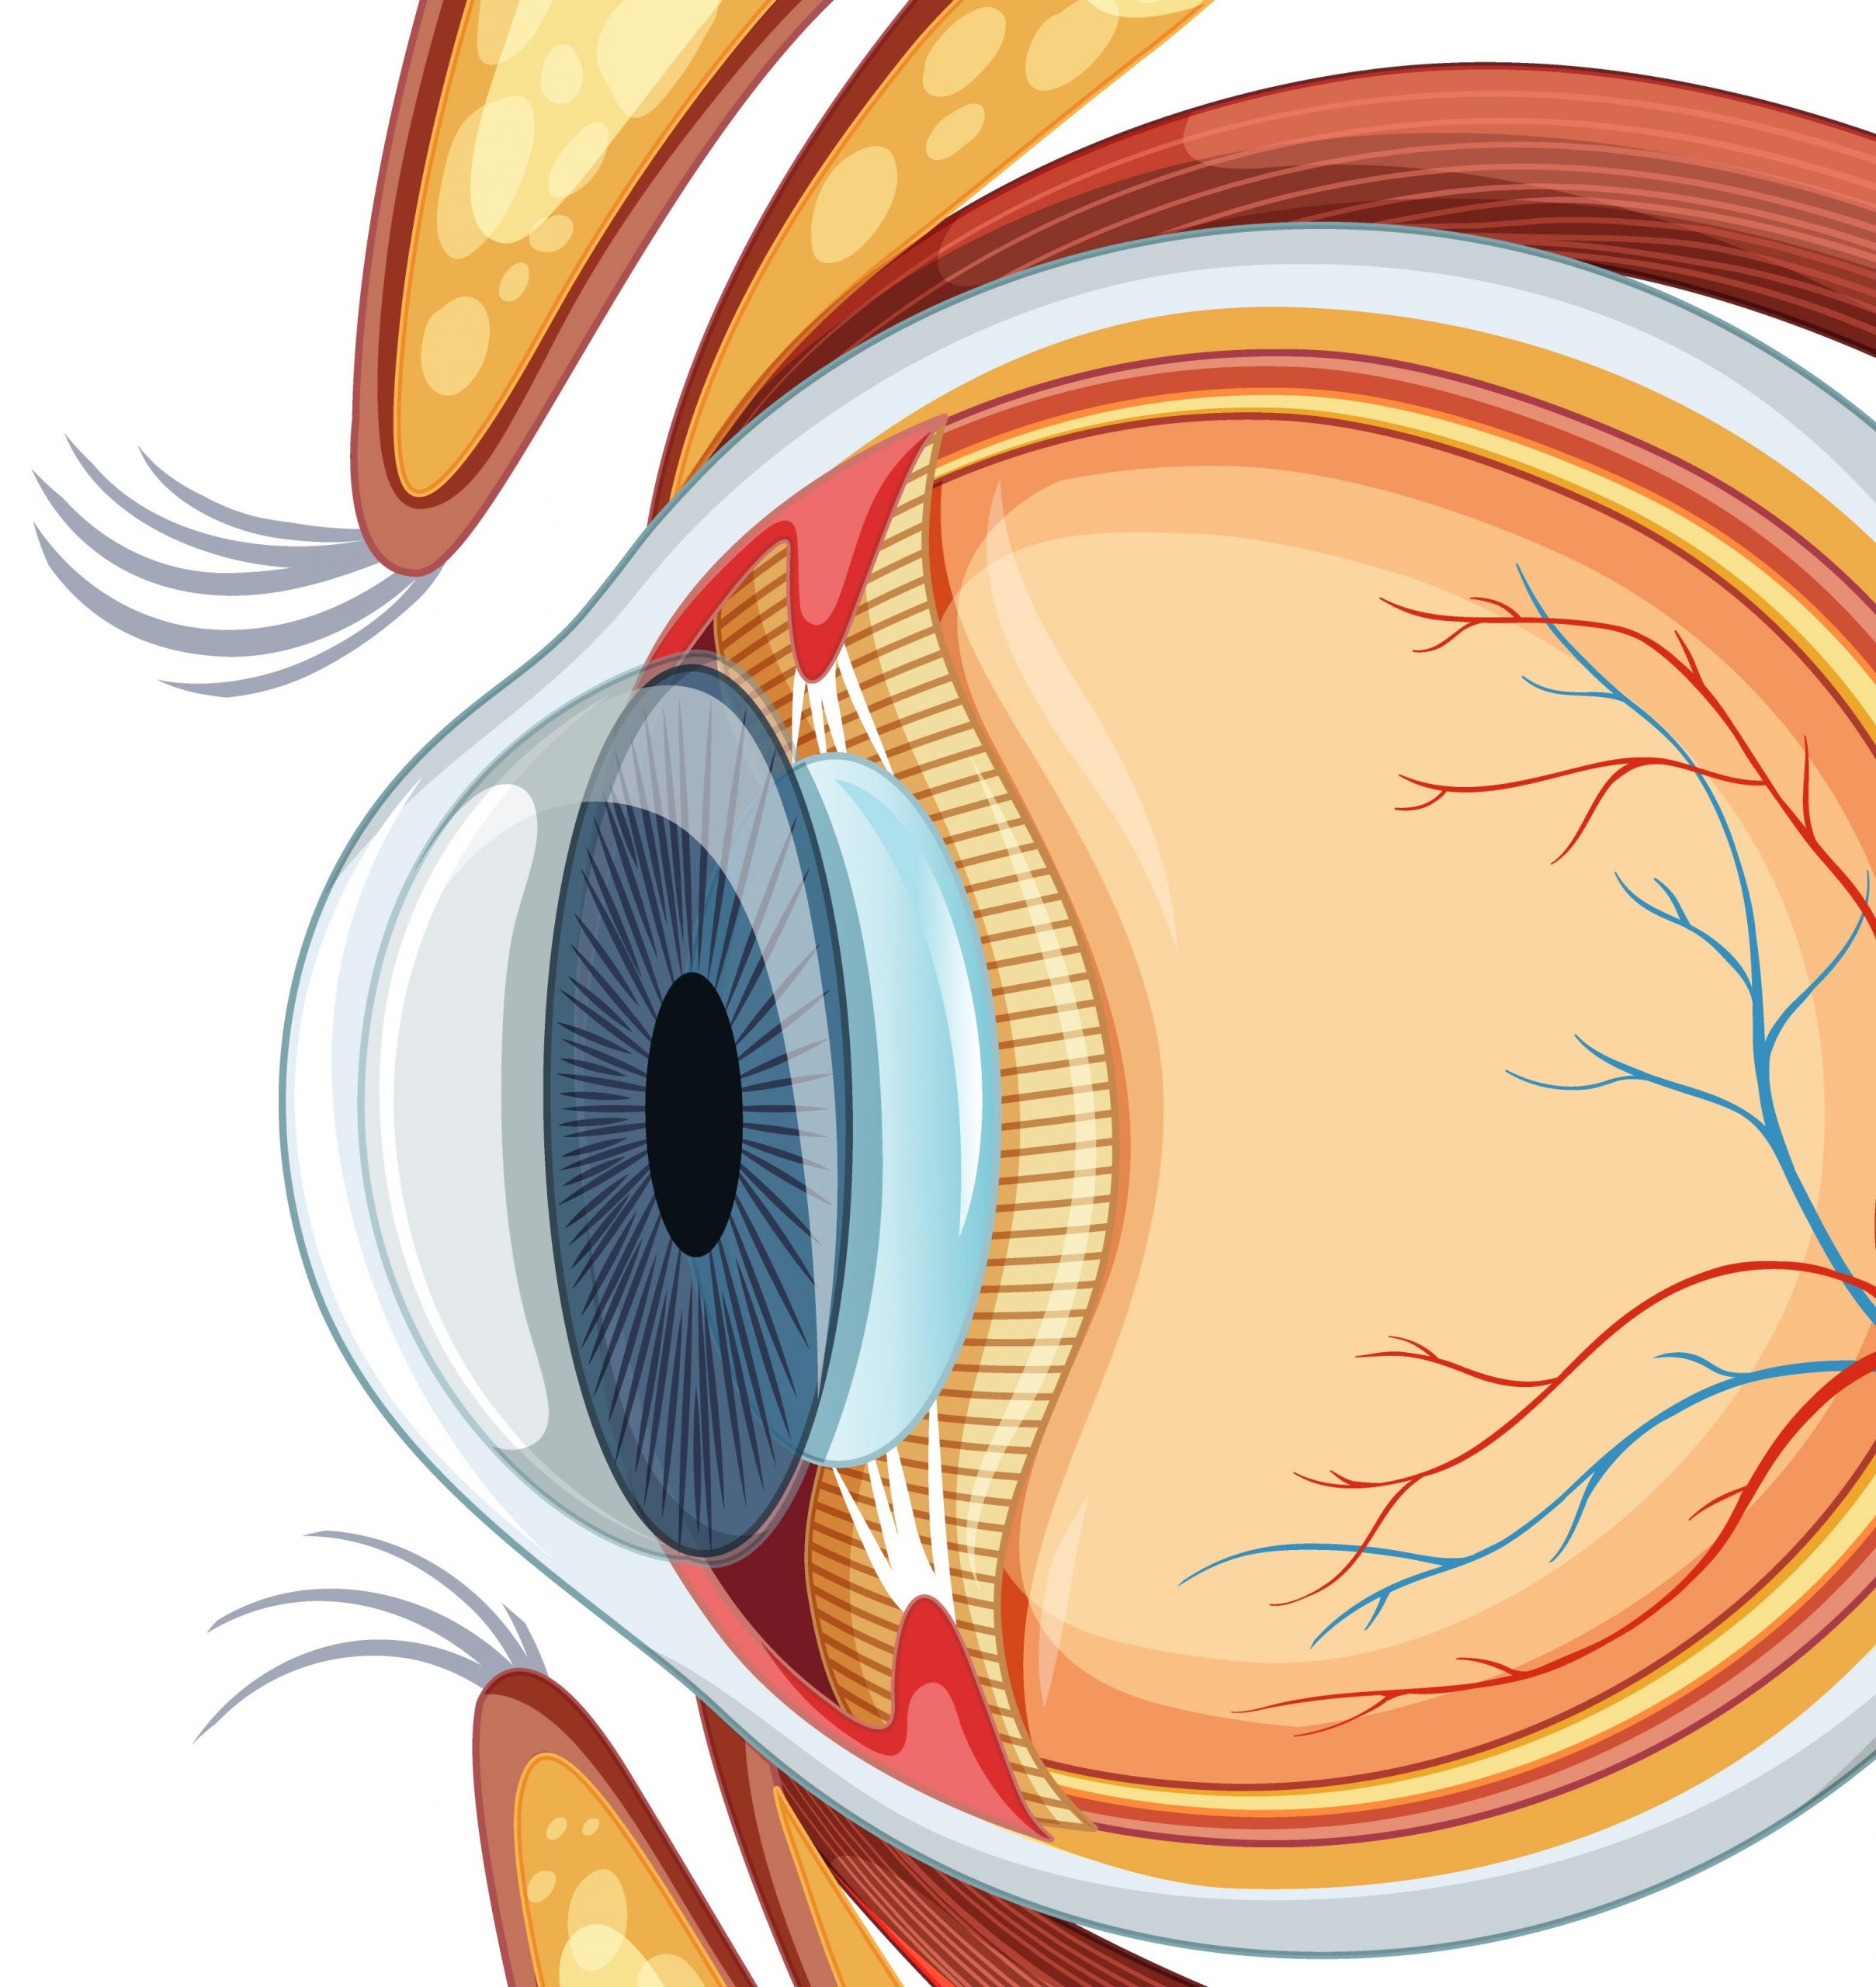 Ojo - Neurotización corneal - Image by brgfx on Freepik